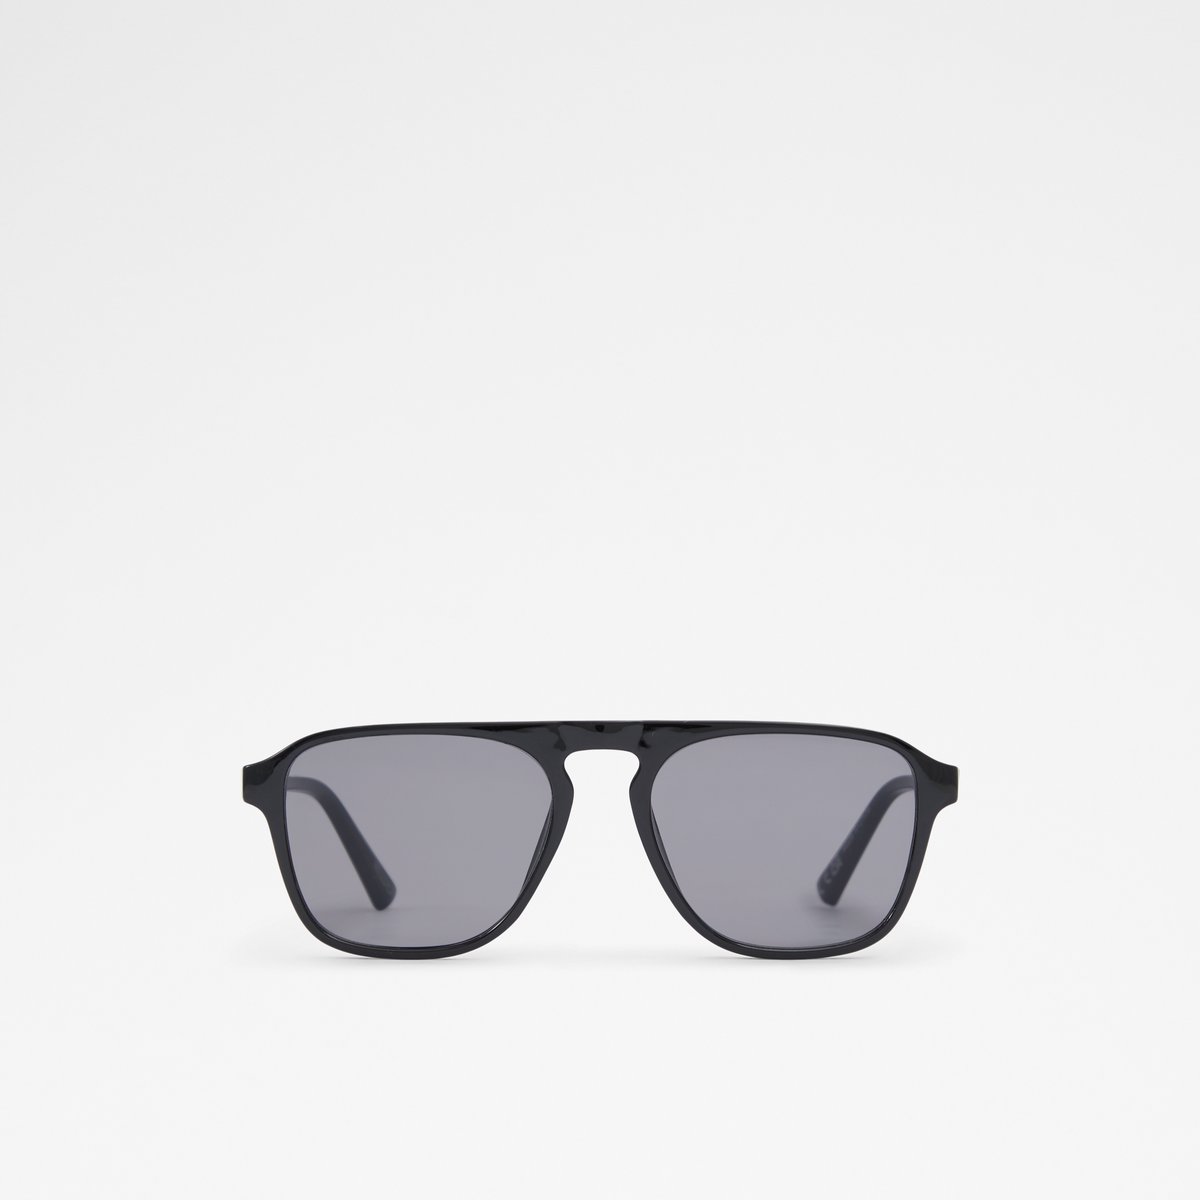 Basking Aviator Sunglasses